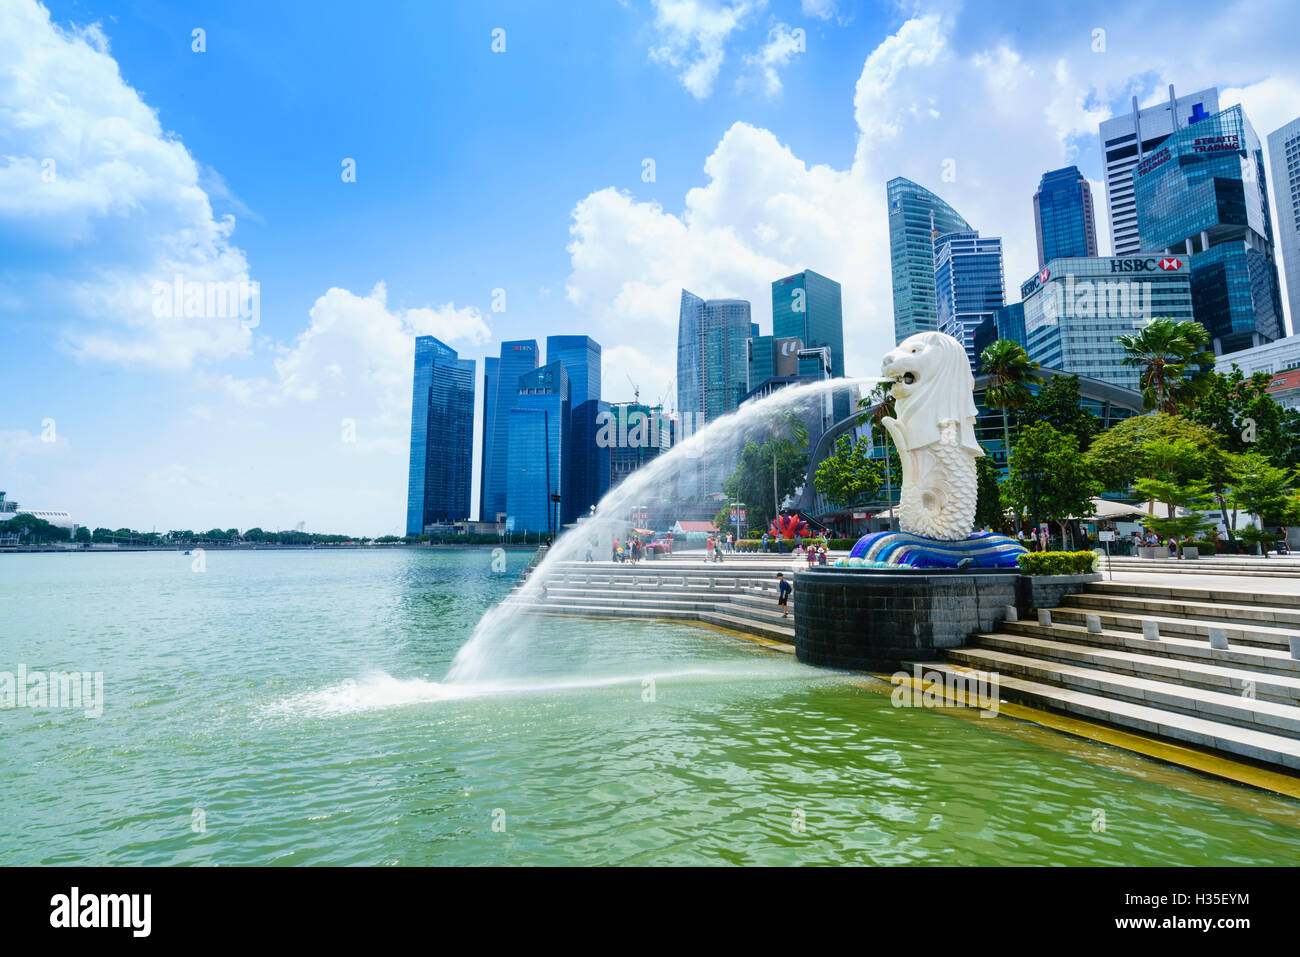 Statue du Merlion, le symbole national de Singapour et son plus célèbre monument, Merlion Park, Marina Bay, Singapour Banque D'Images